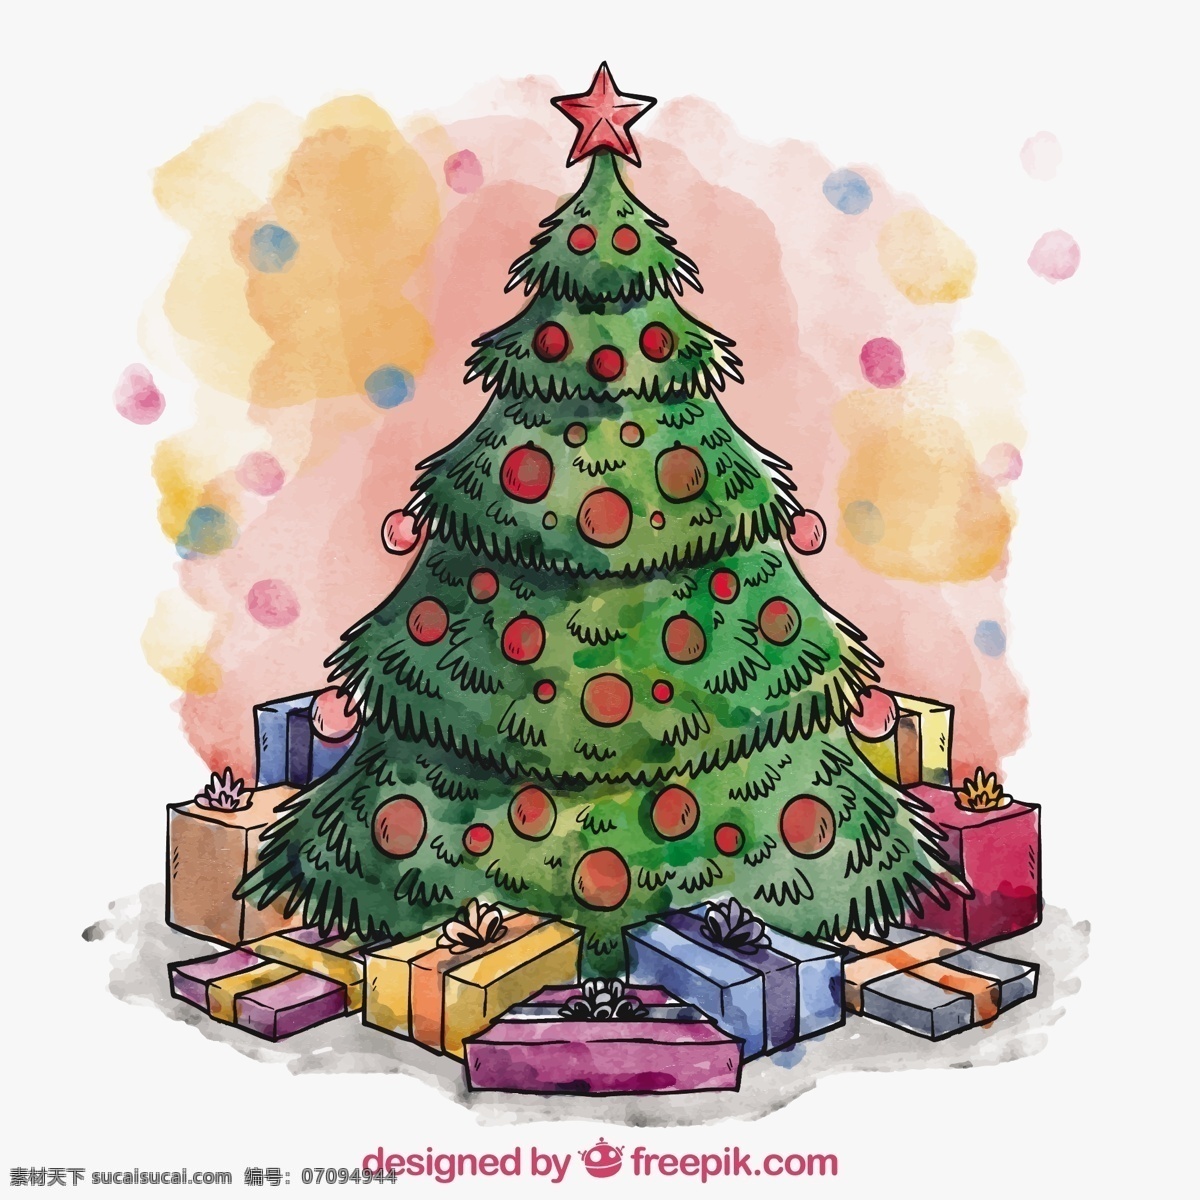 手绘 圣诞树 礼物 水彩 一方面 新的一年 快乐的礼物 新的一年里 雪 圣诞快乐 冬天 油漆 快乐 红色的 圣诞节 庆祝 新的节日 目前 年 白色